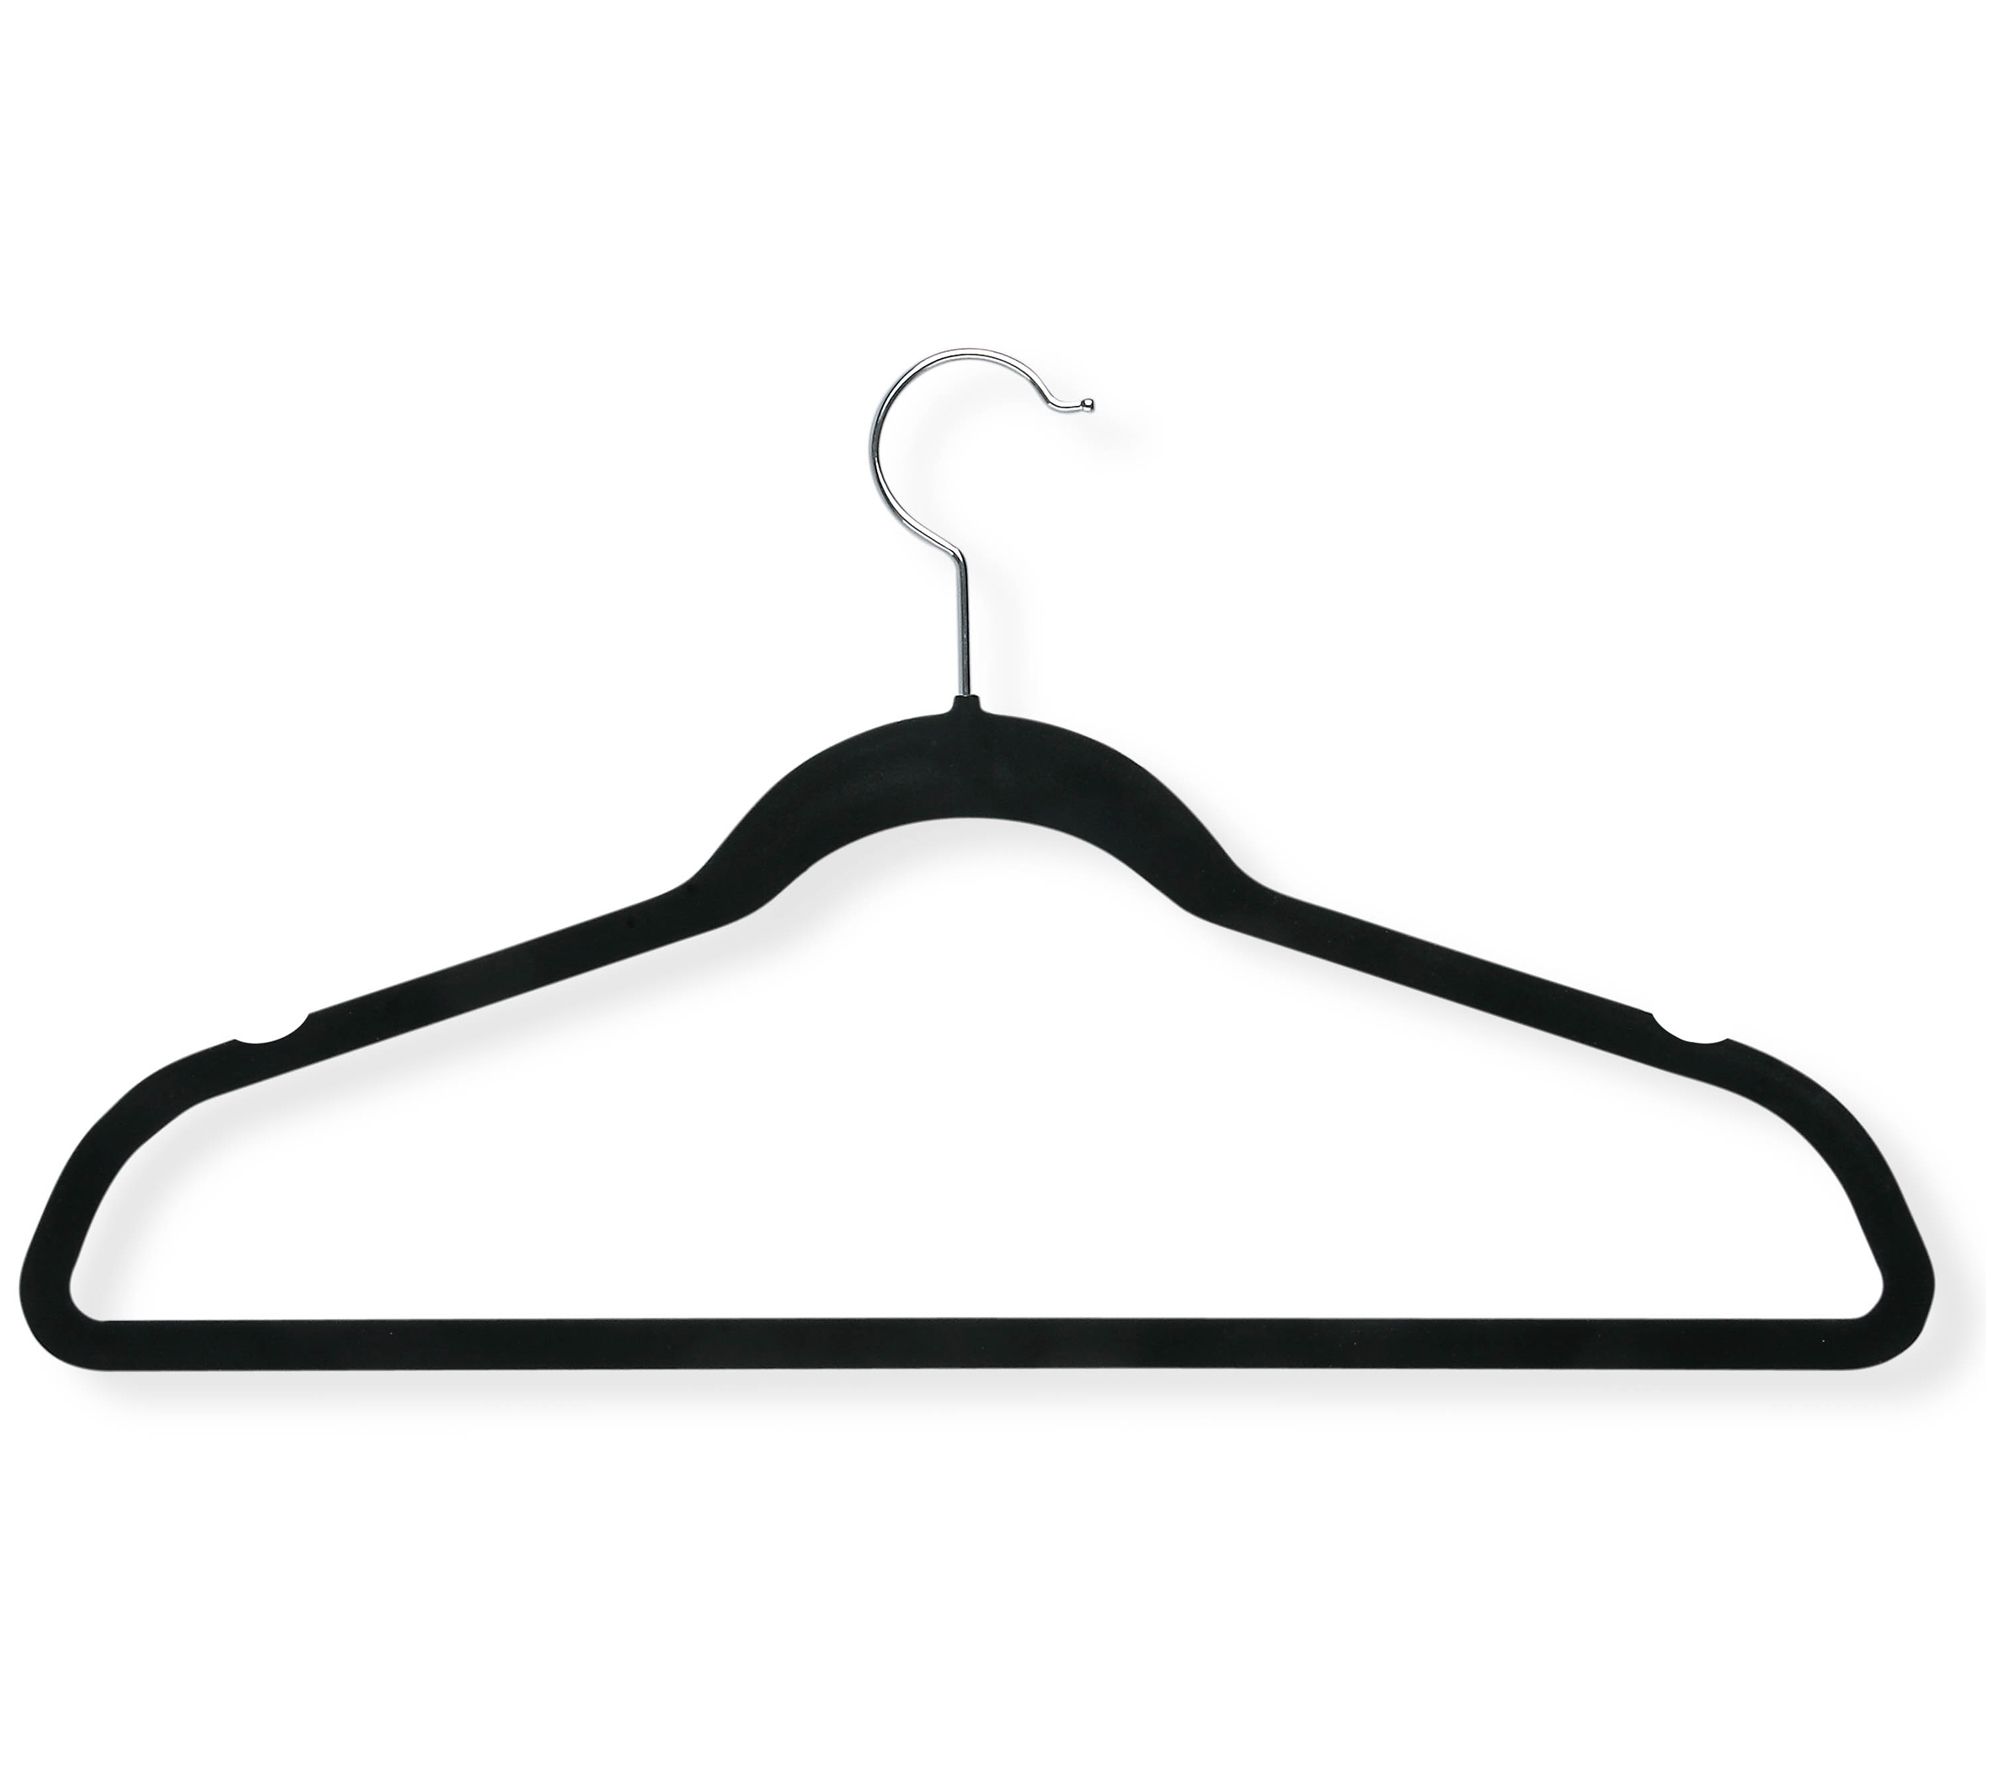 HOUSE DAY Velvet Skirt Hangers 36 Pack, Black Velvet Hangers with